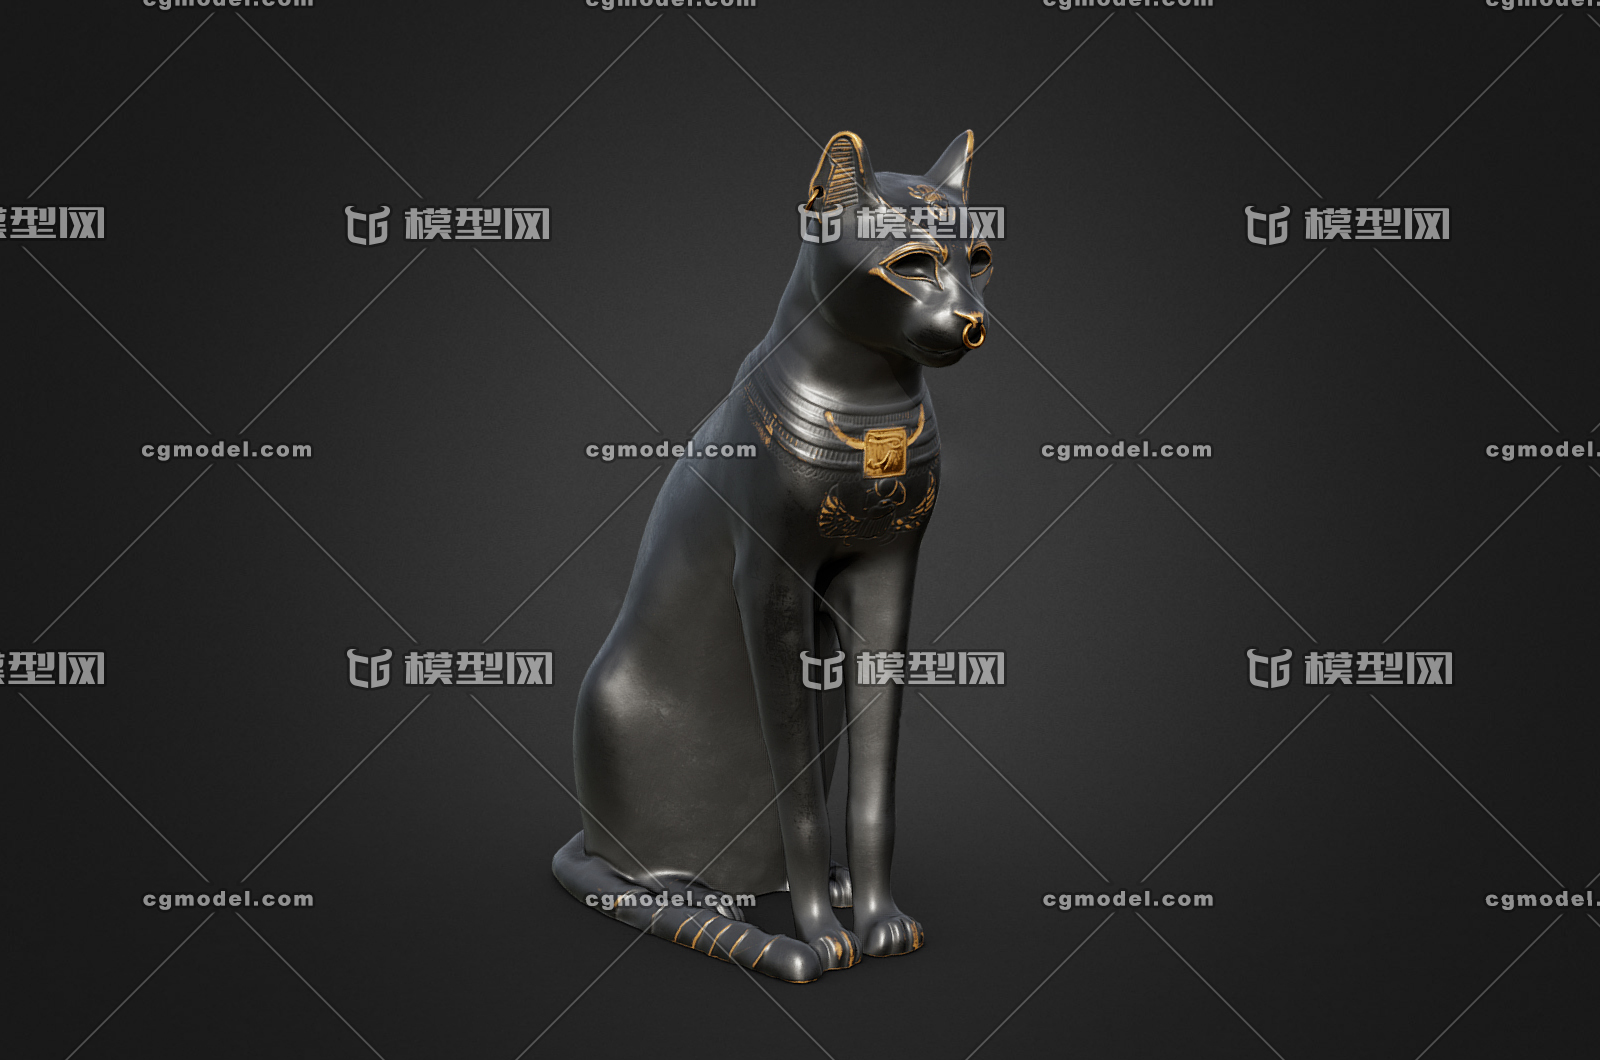 103 pbr次世代 埃及猫雕像 埃及 神话 神像 猫 黑猫 猫神 贝斯特 摆件